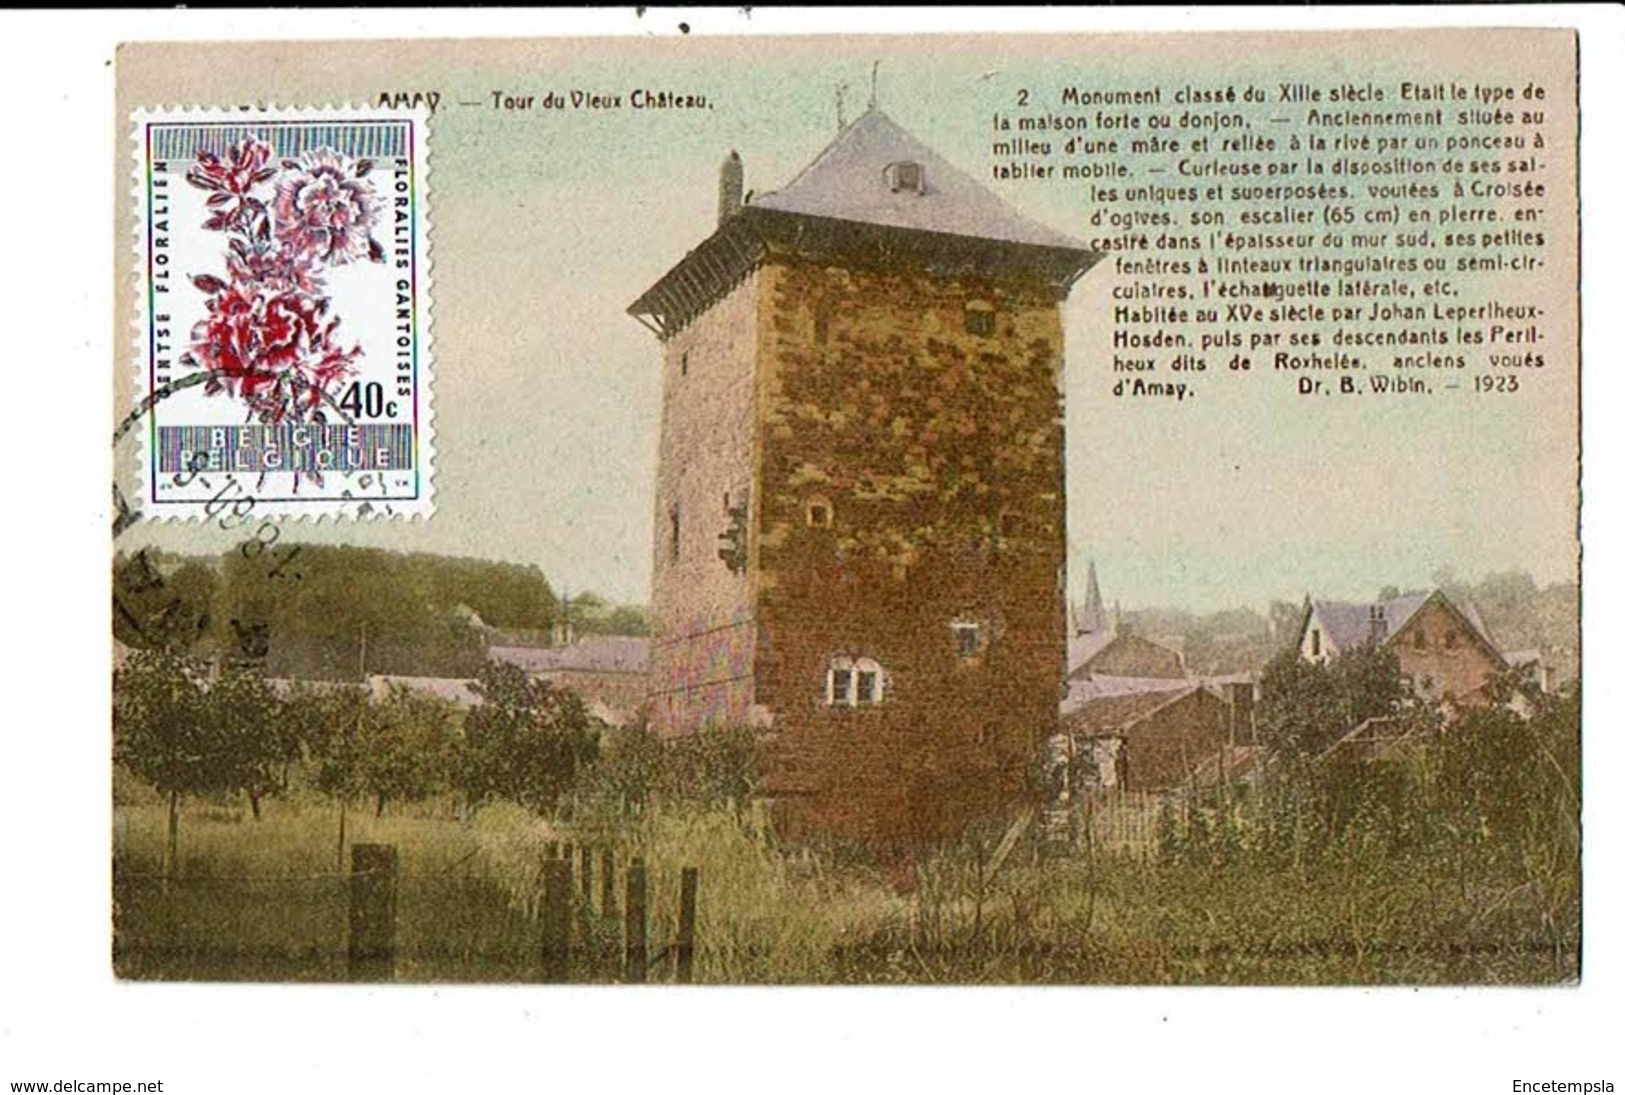 CPA-Carte Postale-Belgique-Amay- Tour Du Vieux Château-1960-M14721 - Amay